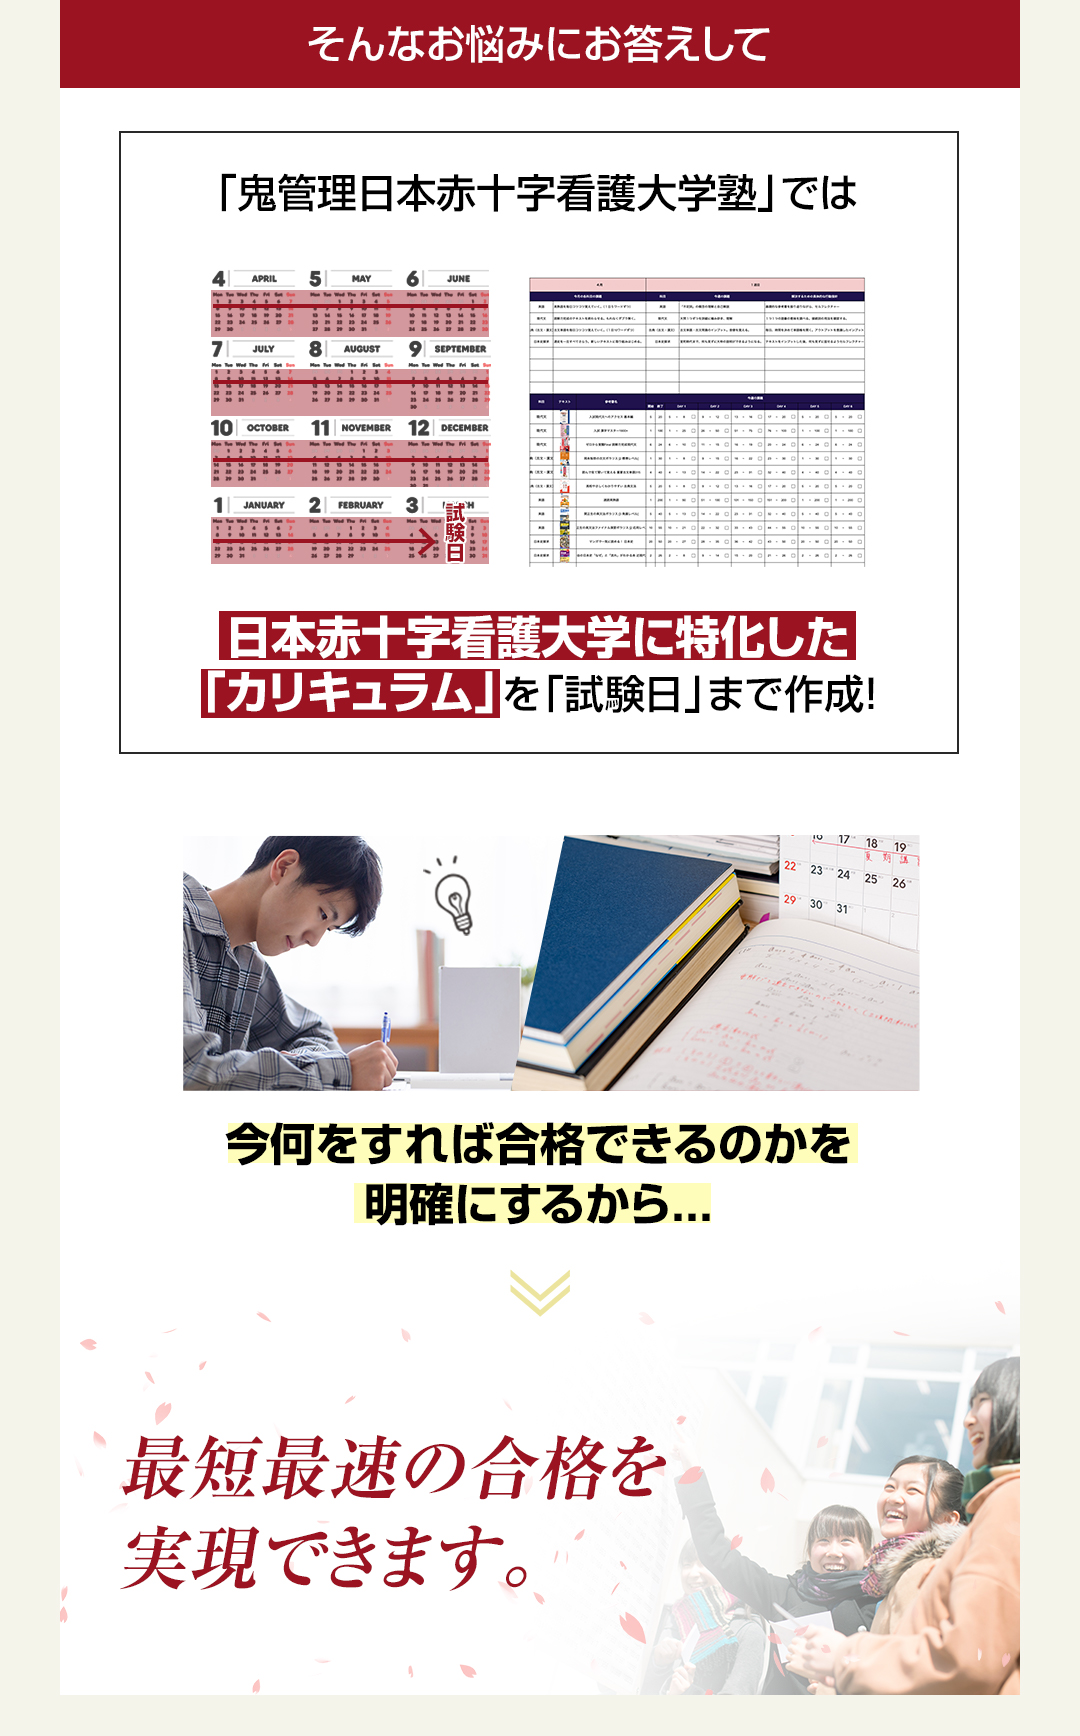 「鬼管理日本赤十字看護大学塾」では日本赤十字看護大学に特化した「カリキュラム」を「試験日」まで作成